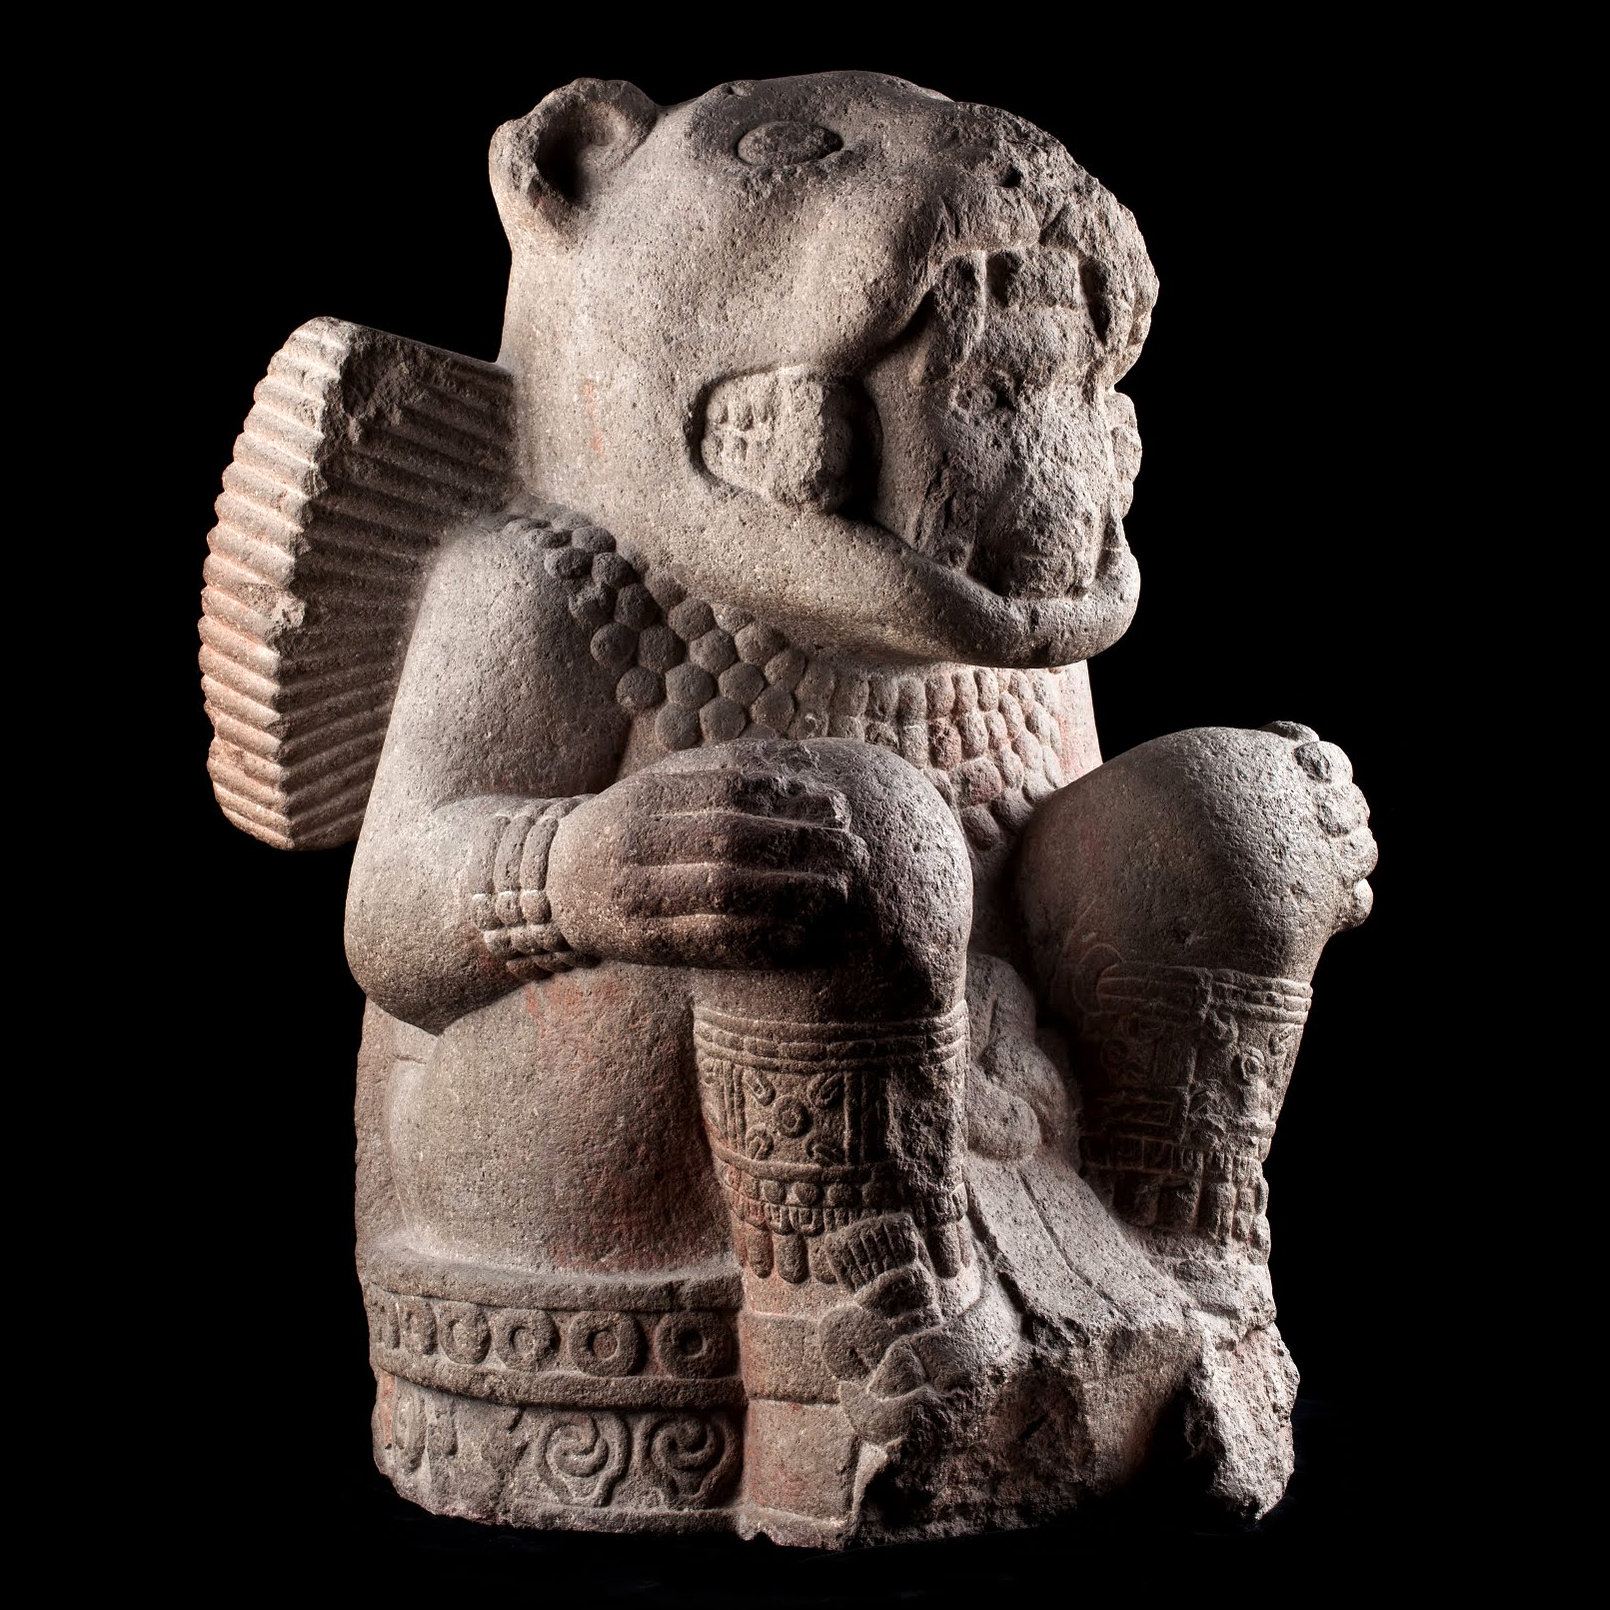 Воин-ягуар. Мексика, 1250-1500 гг. н.э. Коллекция Museo Nacional de Antropologia, Мехико.